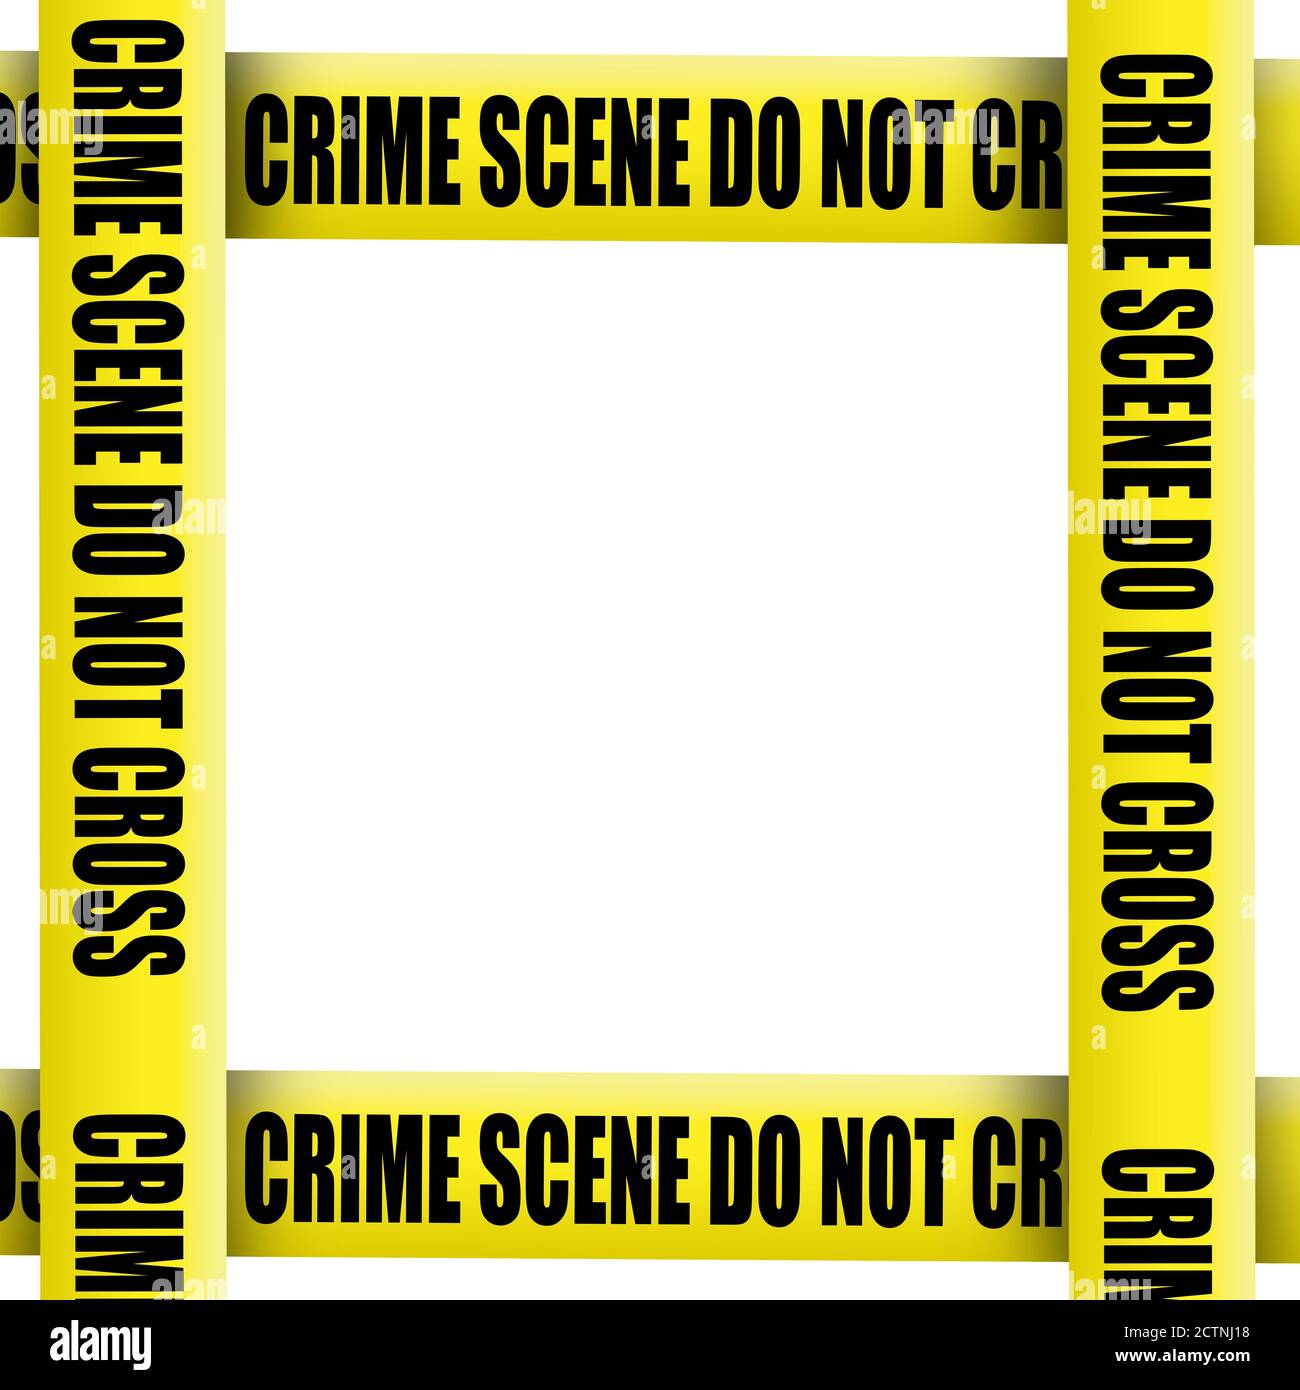 Crime scene tape frame Stock Photo - Alamy